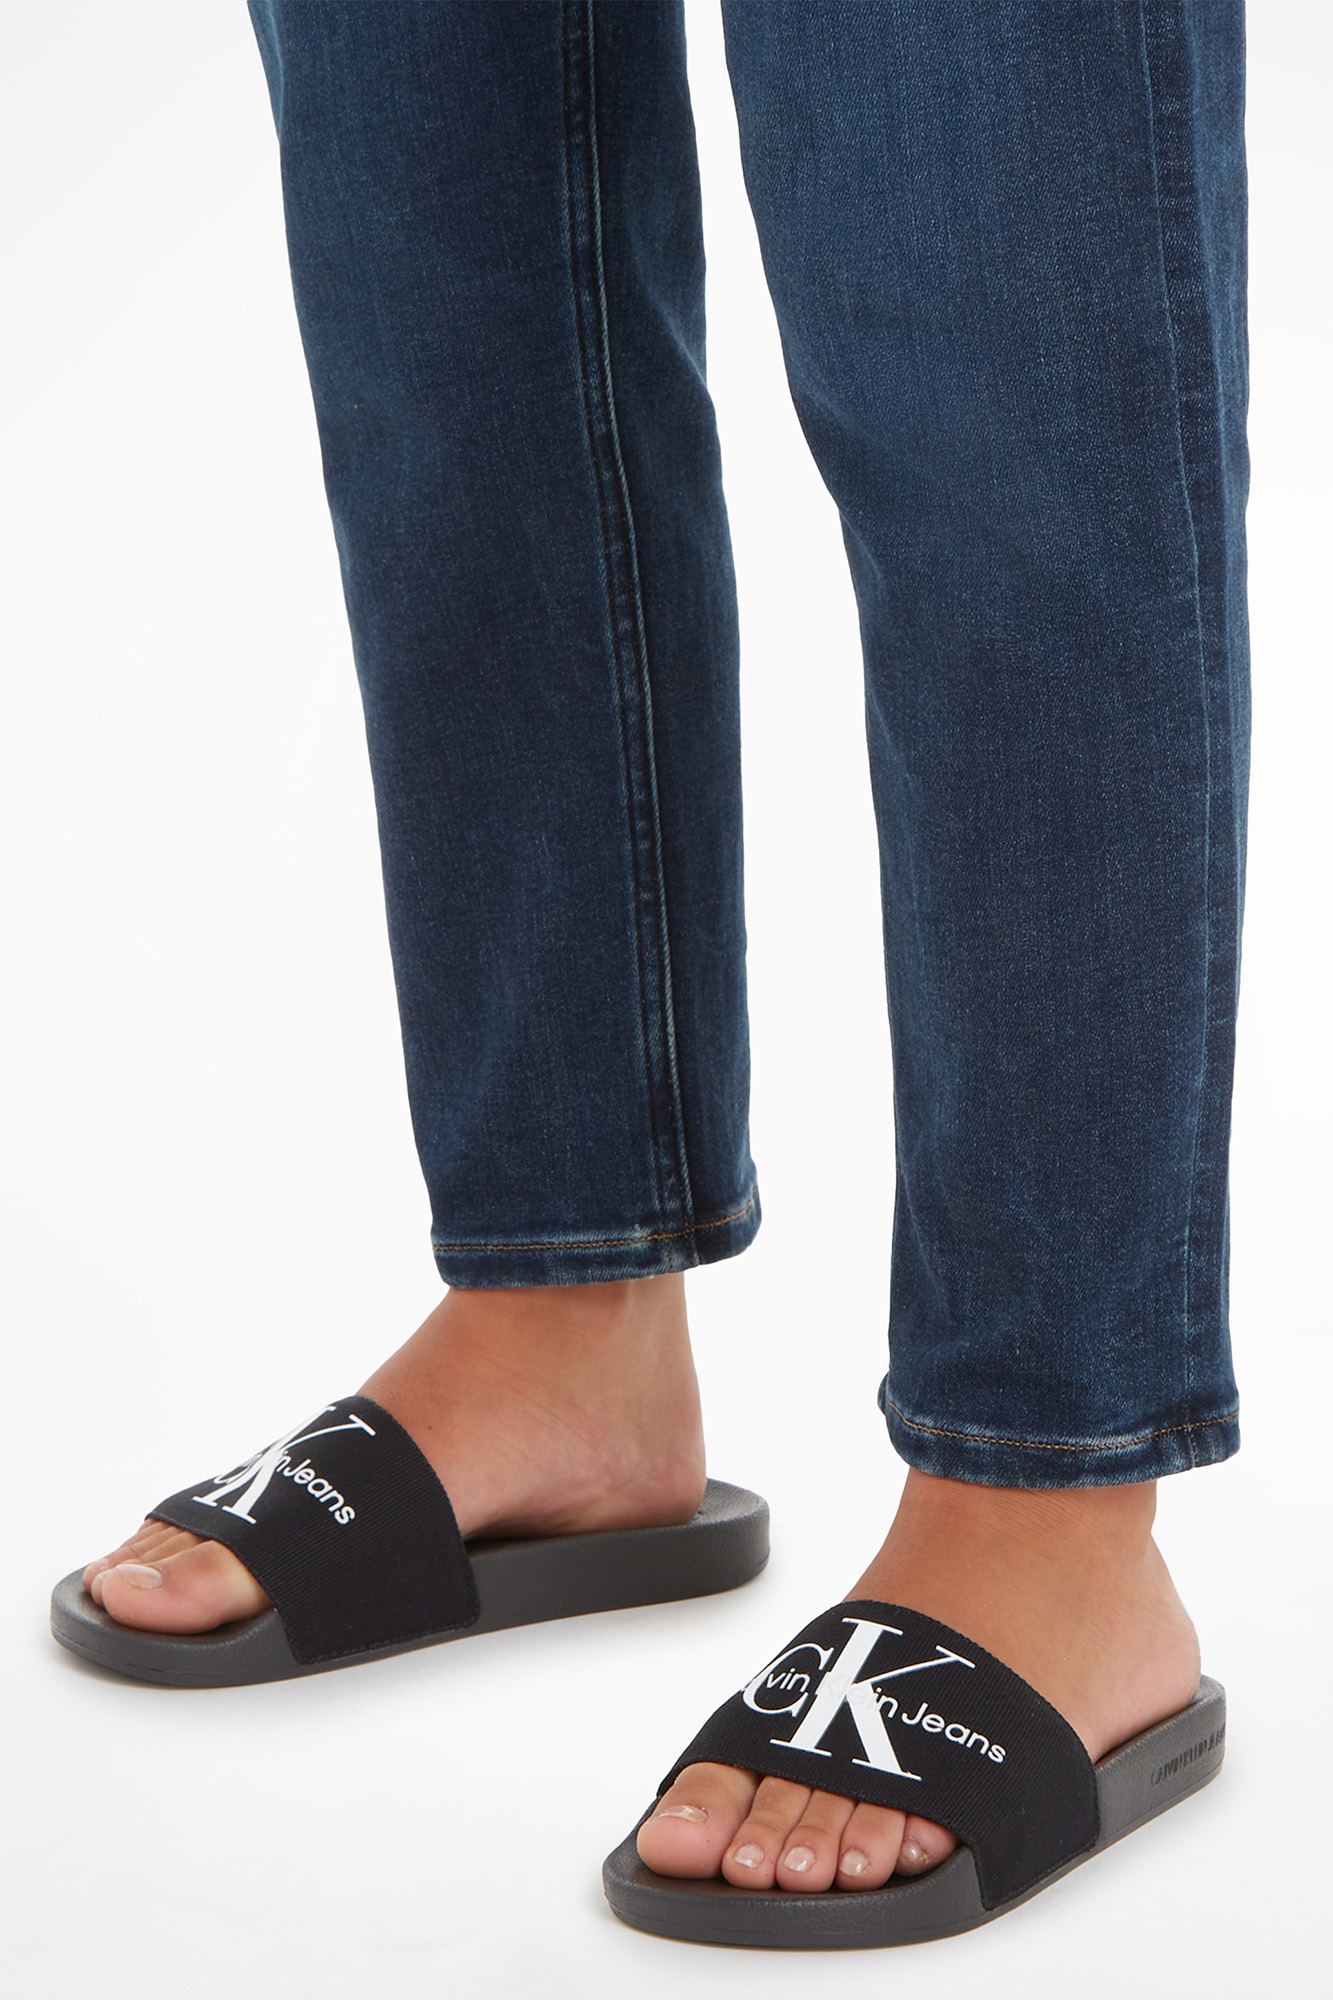 Women's Calvin Klein Jeans sandals